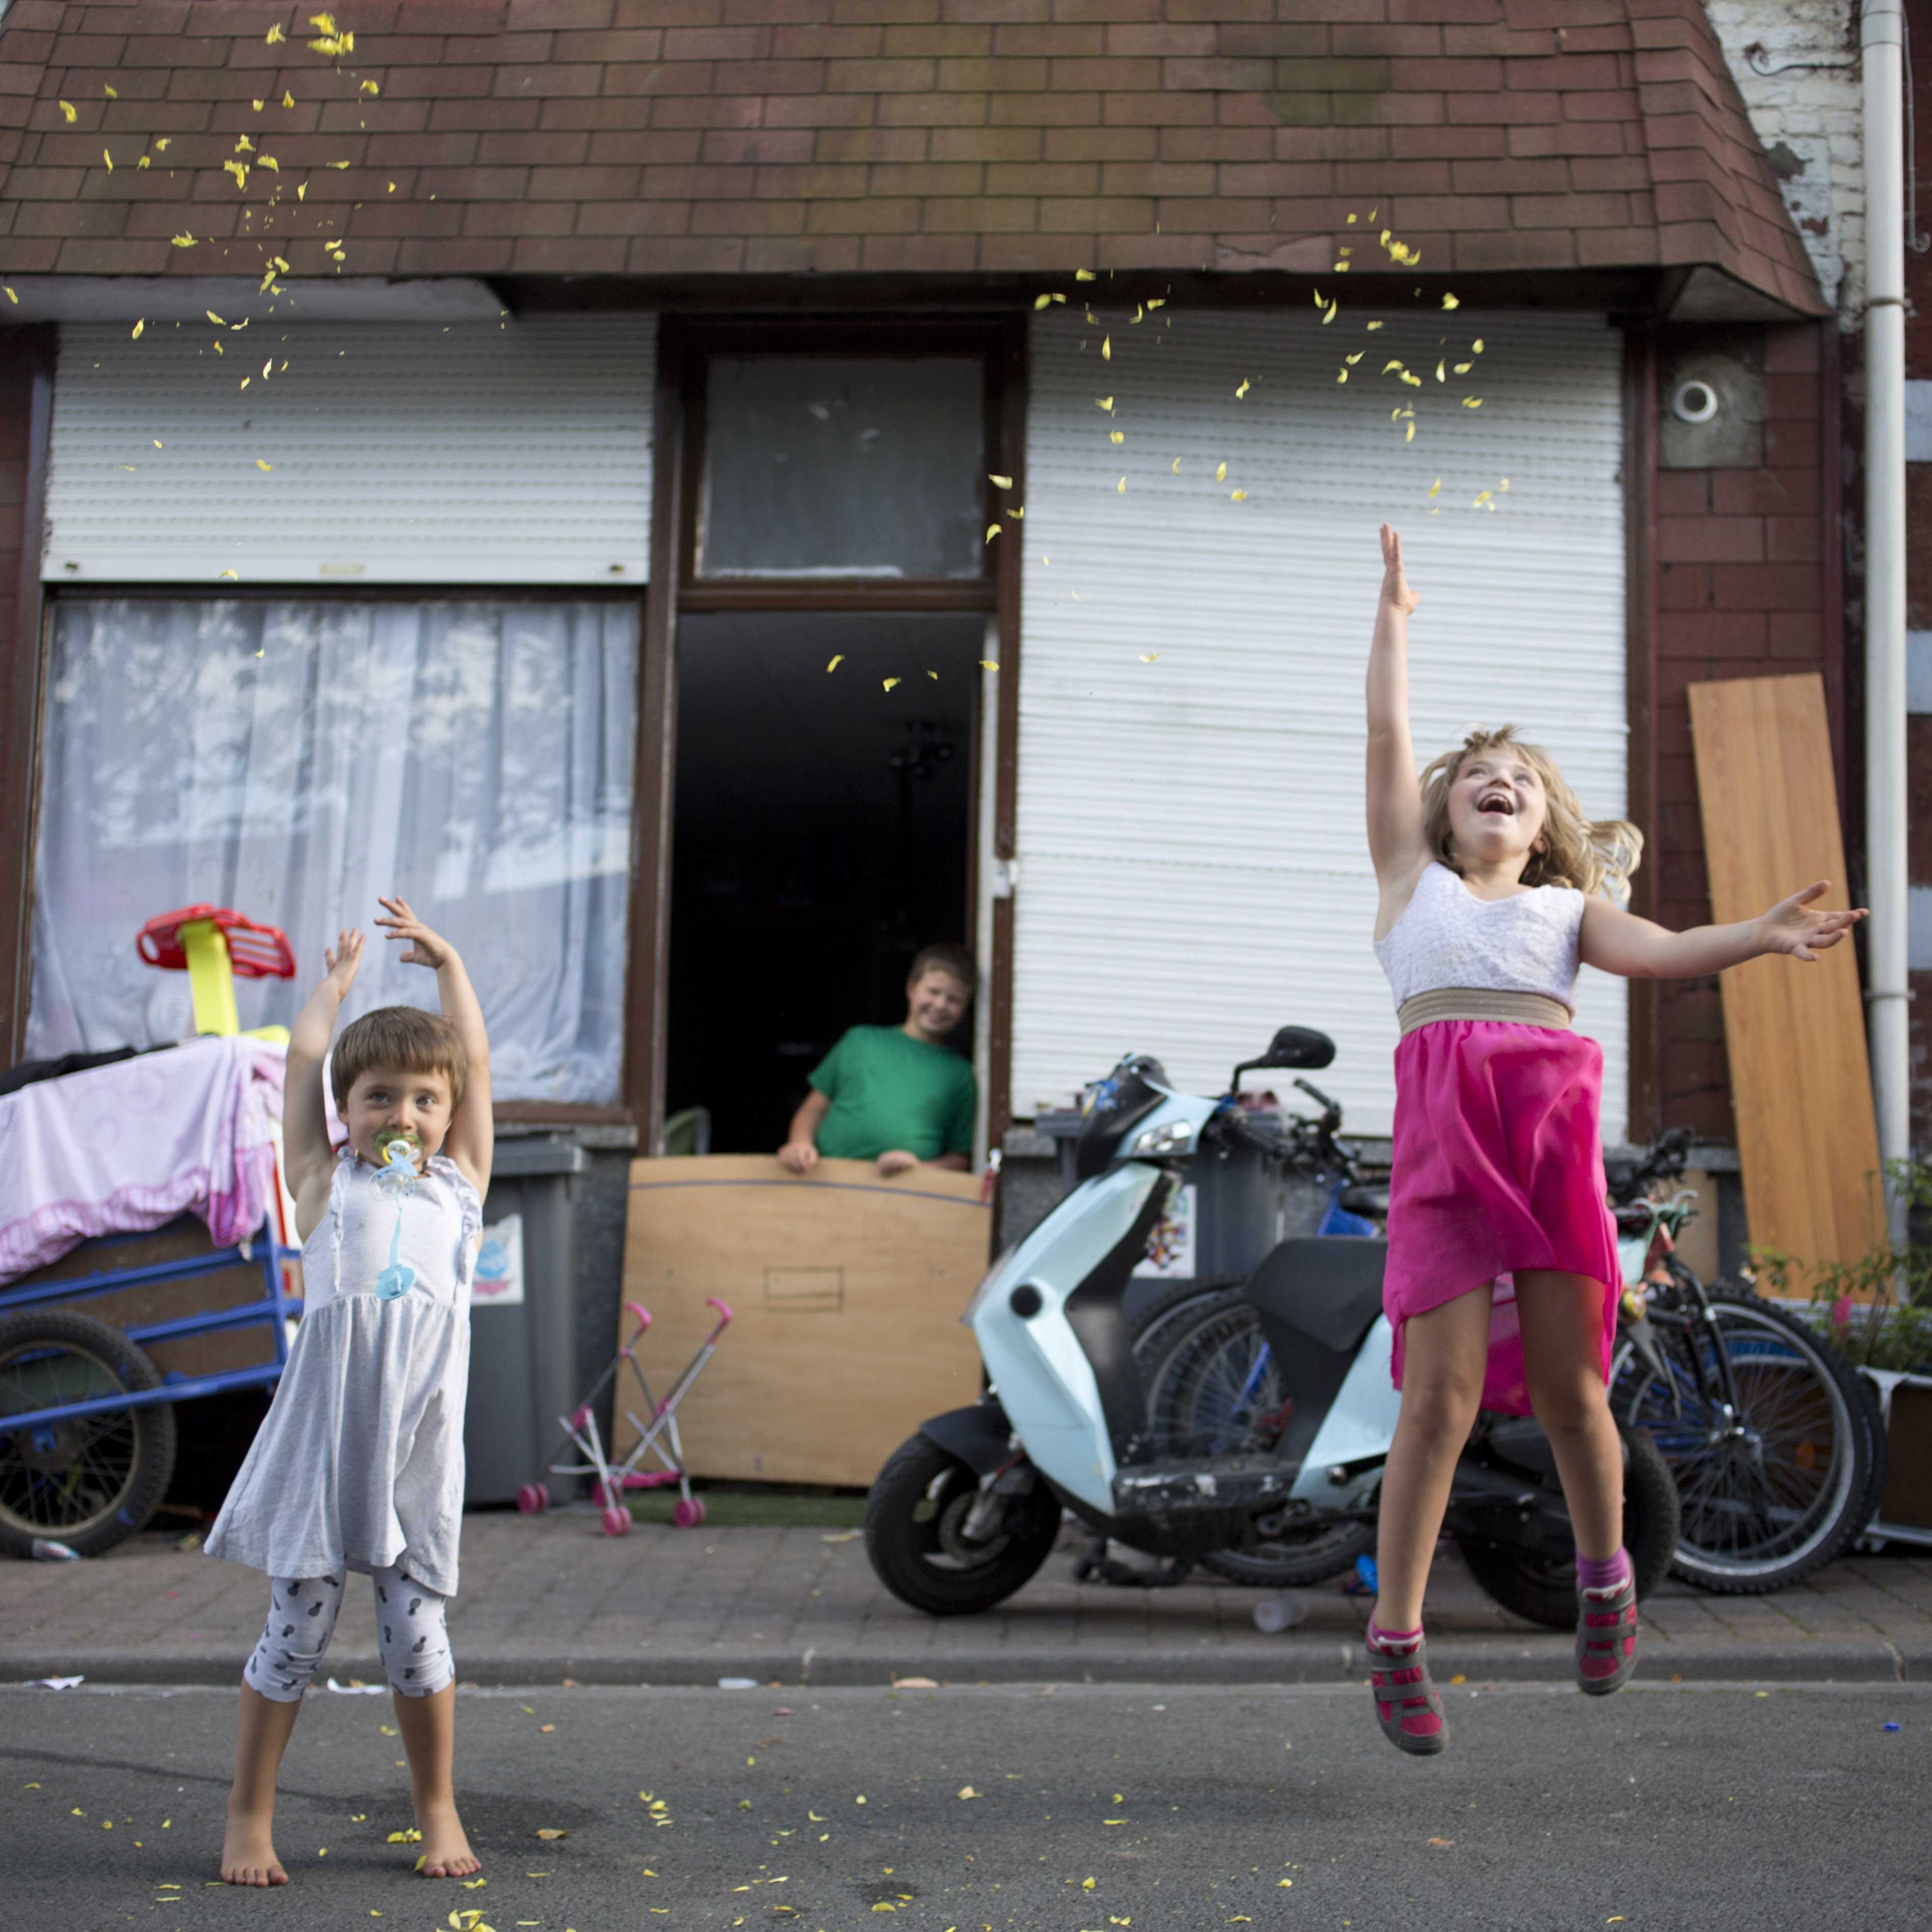 Photographie d'enfants jouant dans le quartier de La Lainière à Roubaix par Eric Le Brun